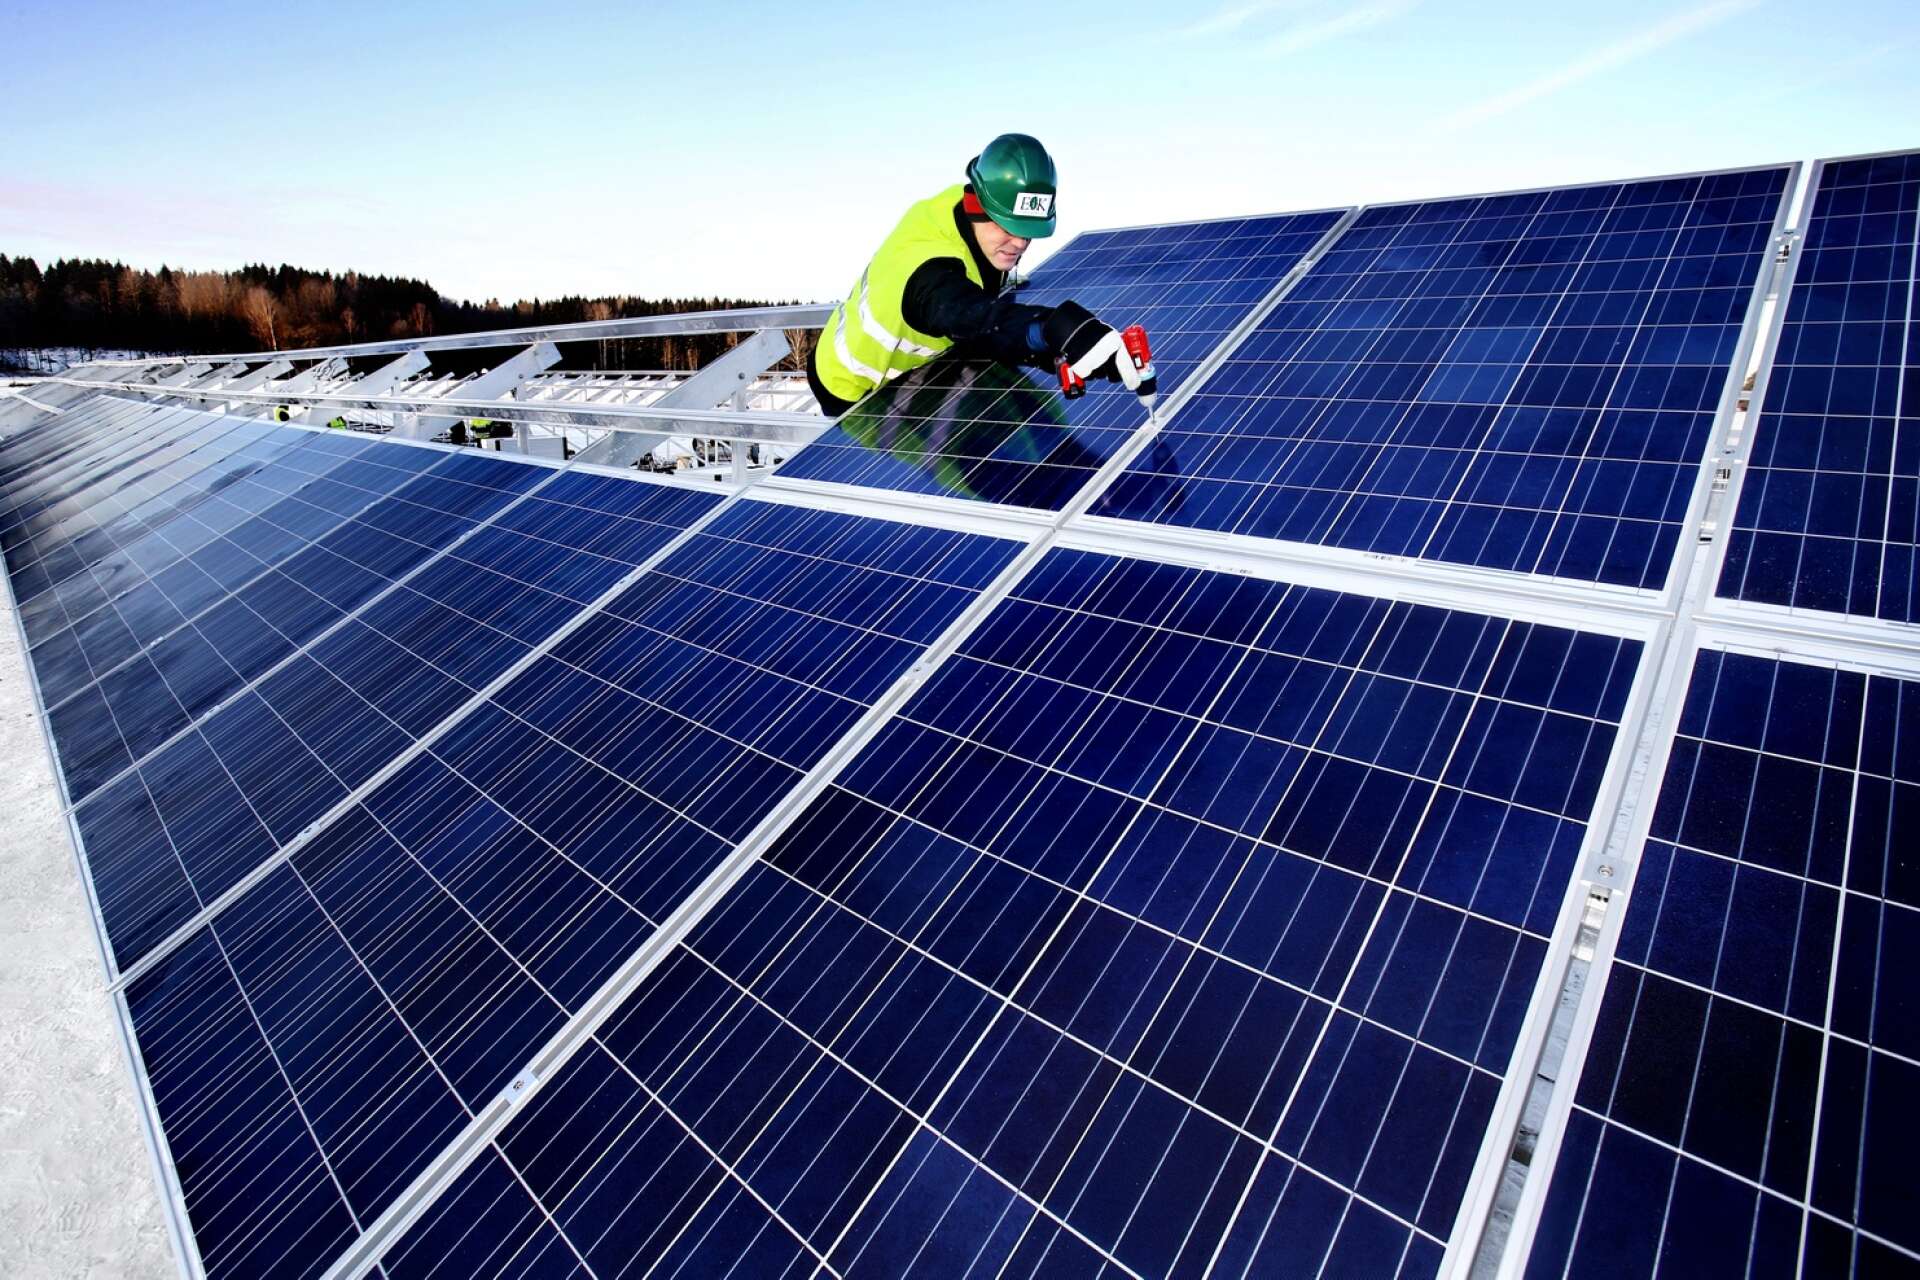 Per Eriksson vill se en snabbare omställning till grön energi i Bengtsfors kommun och föreslår att undersöka möjligheterna att etablera en samägd solcellsanläggning/park.